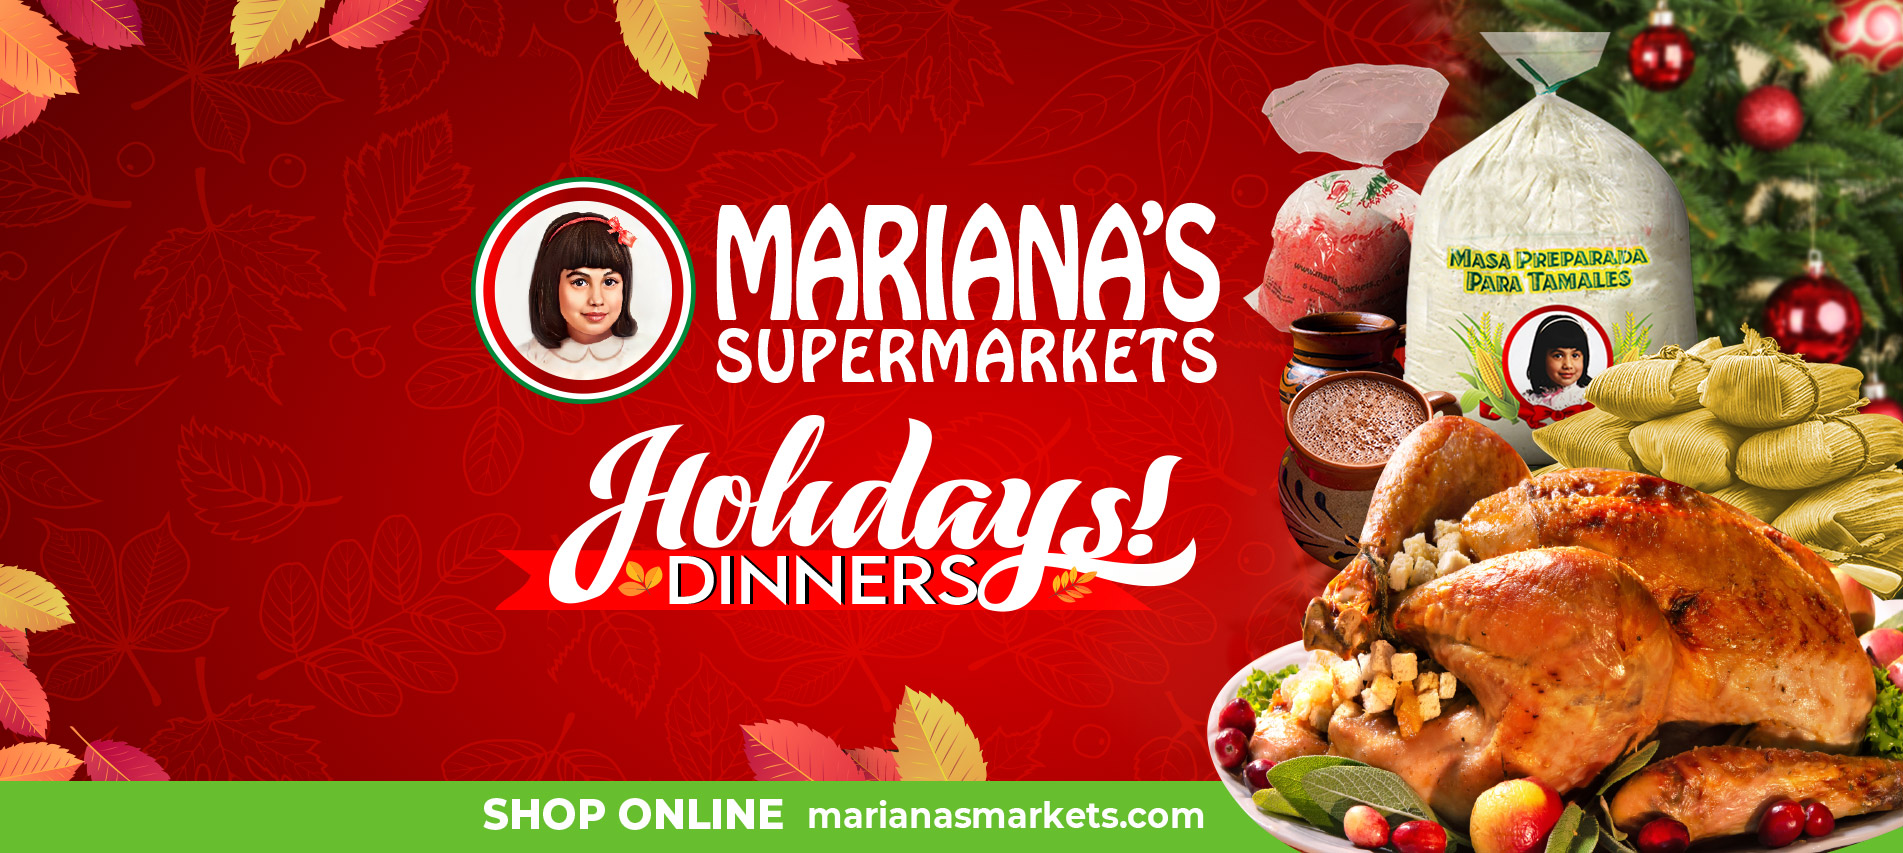 Mariana's holiday dinner